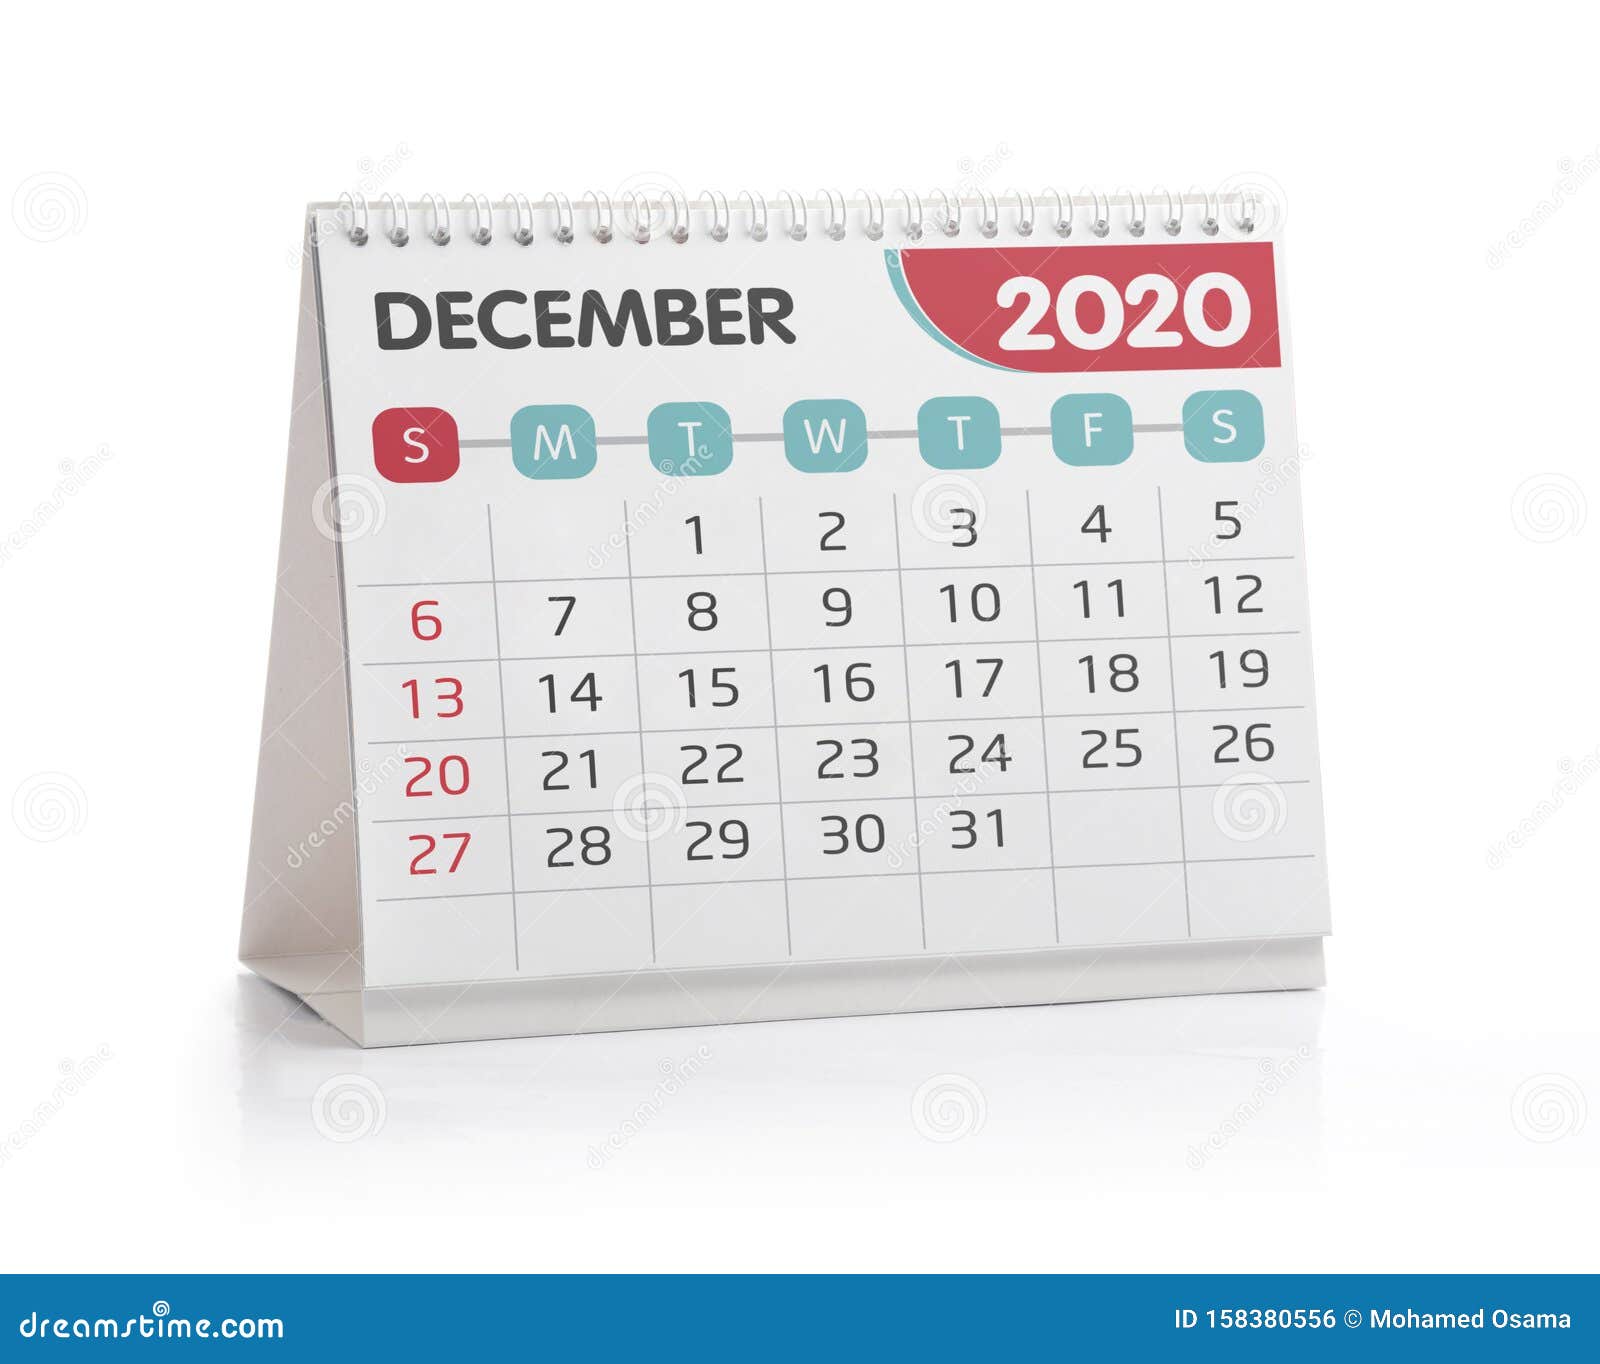 december 2020 office calendar